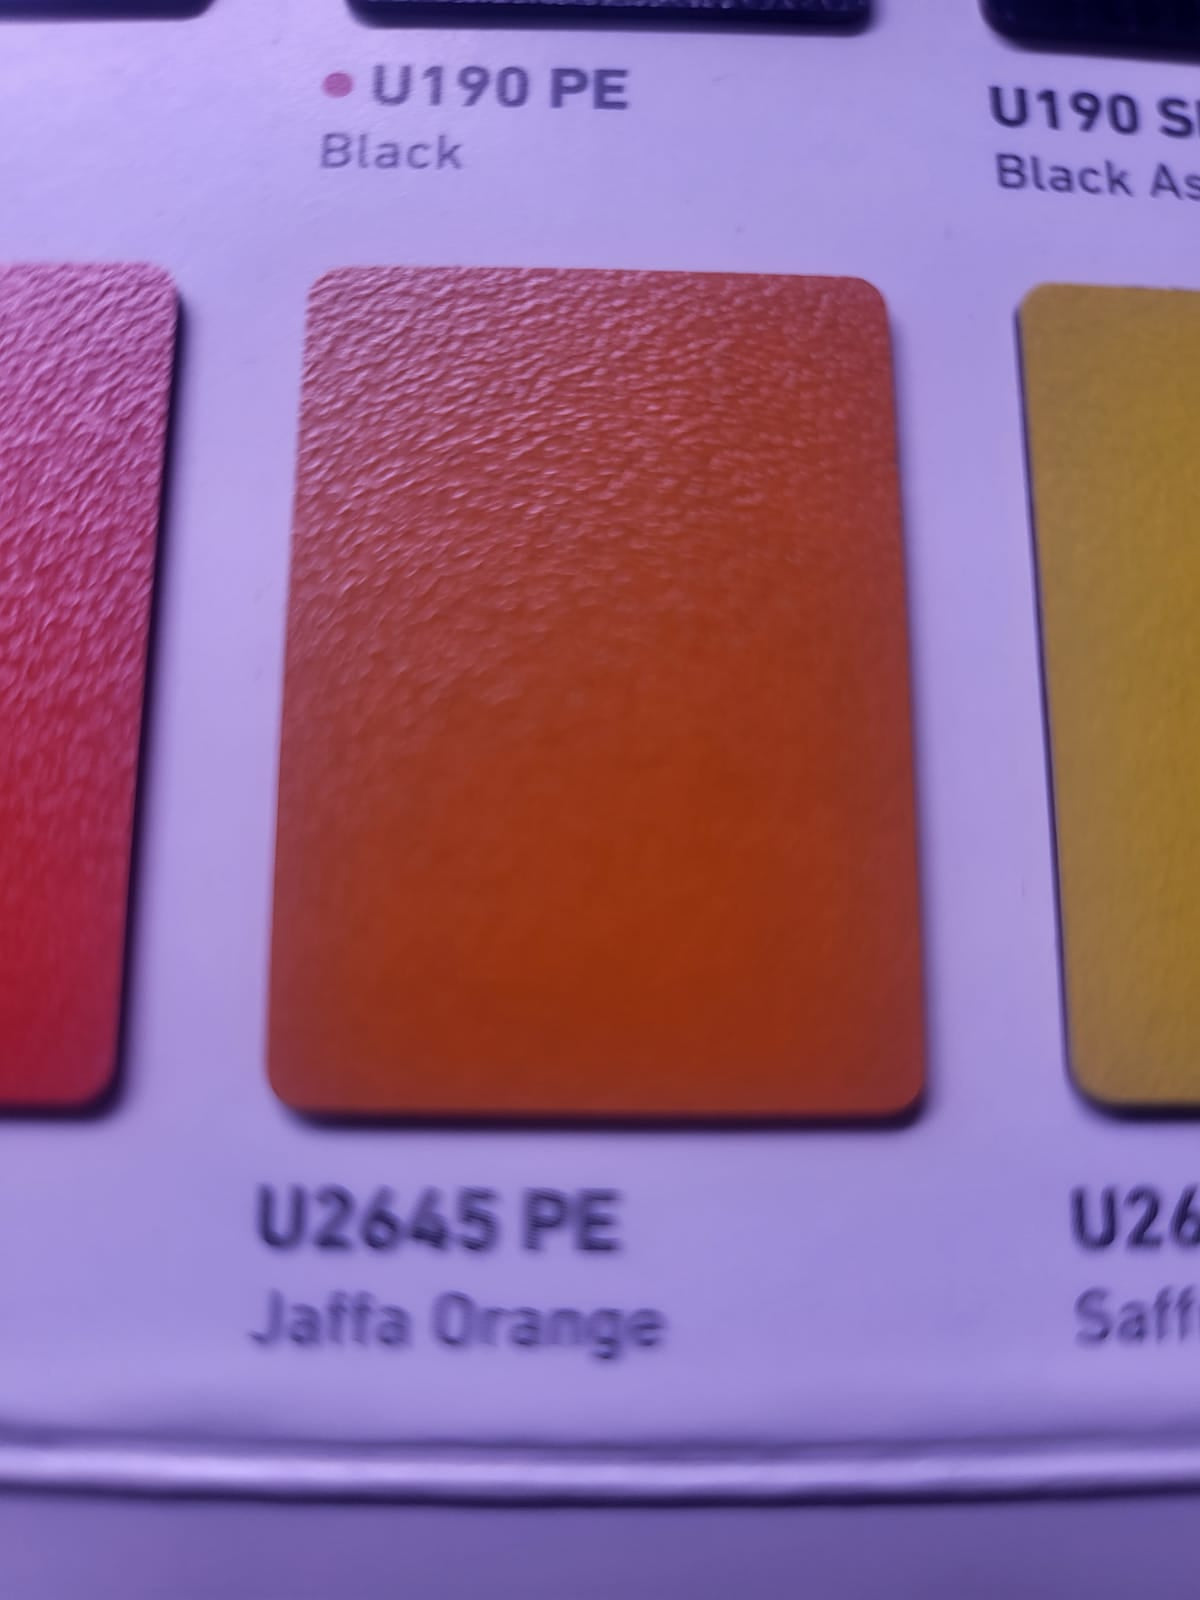 Swiss Krono U2645 PE MFC 18mm Jaffa Orange